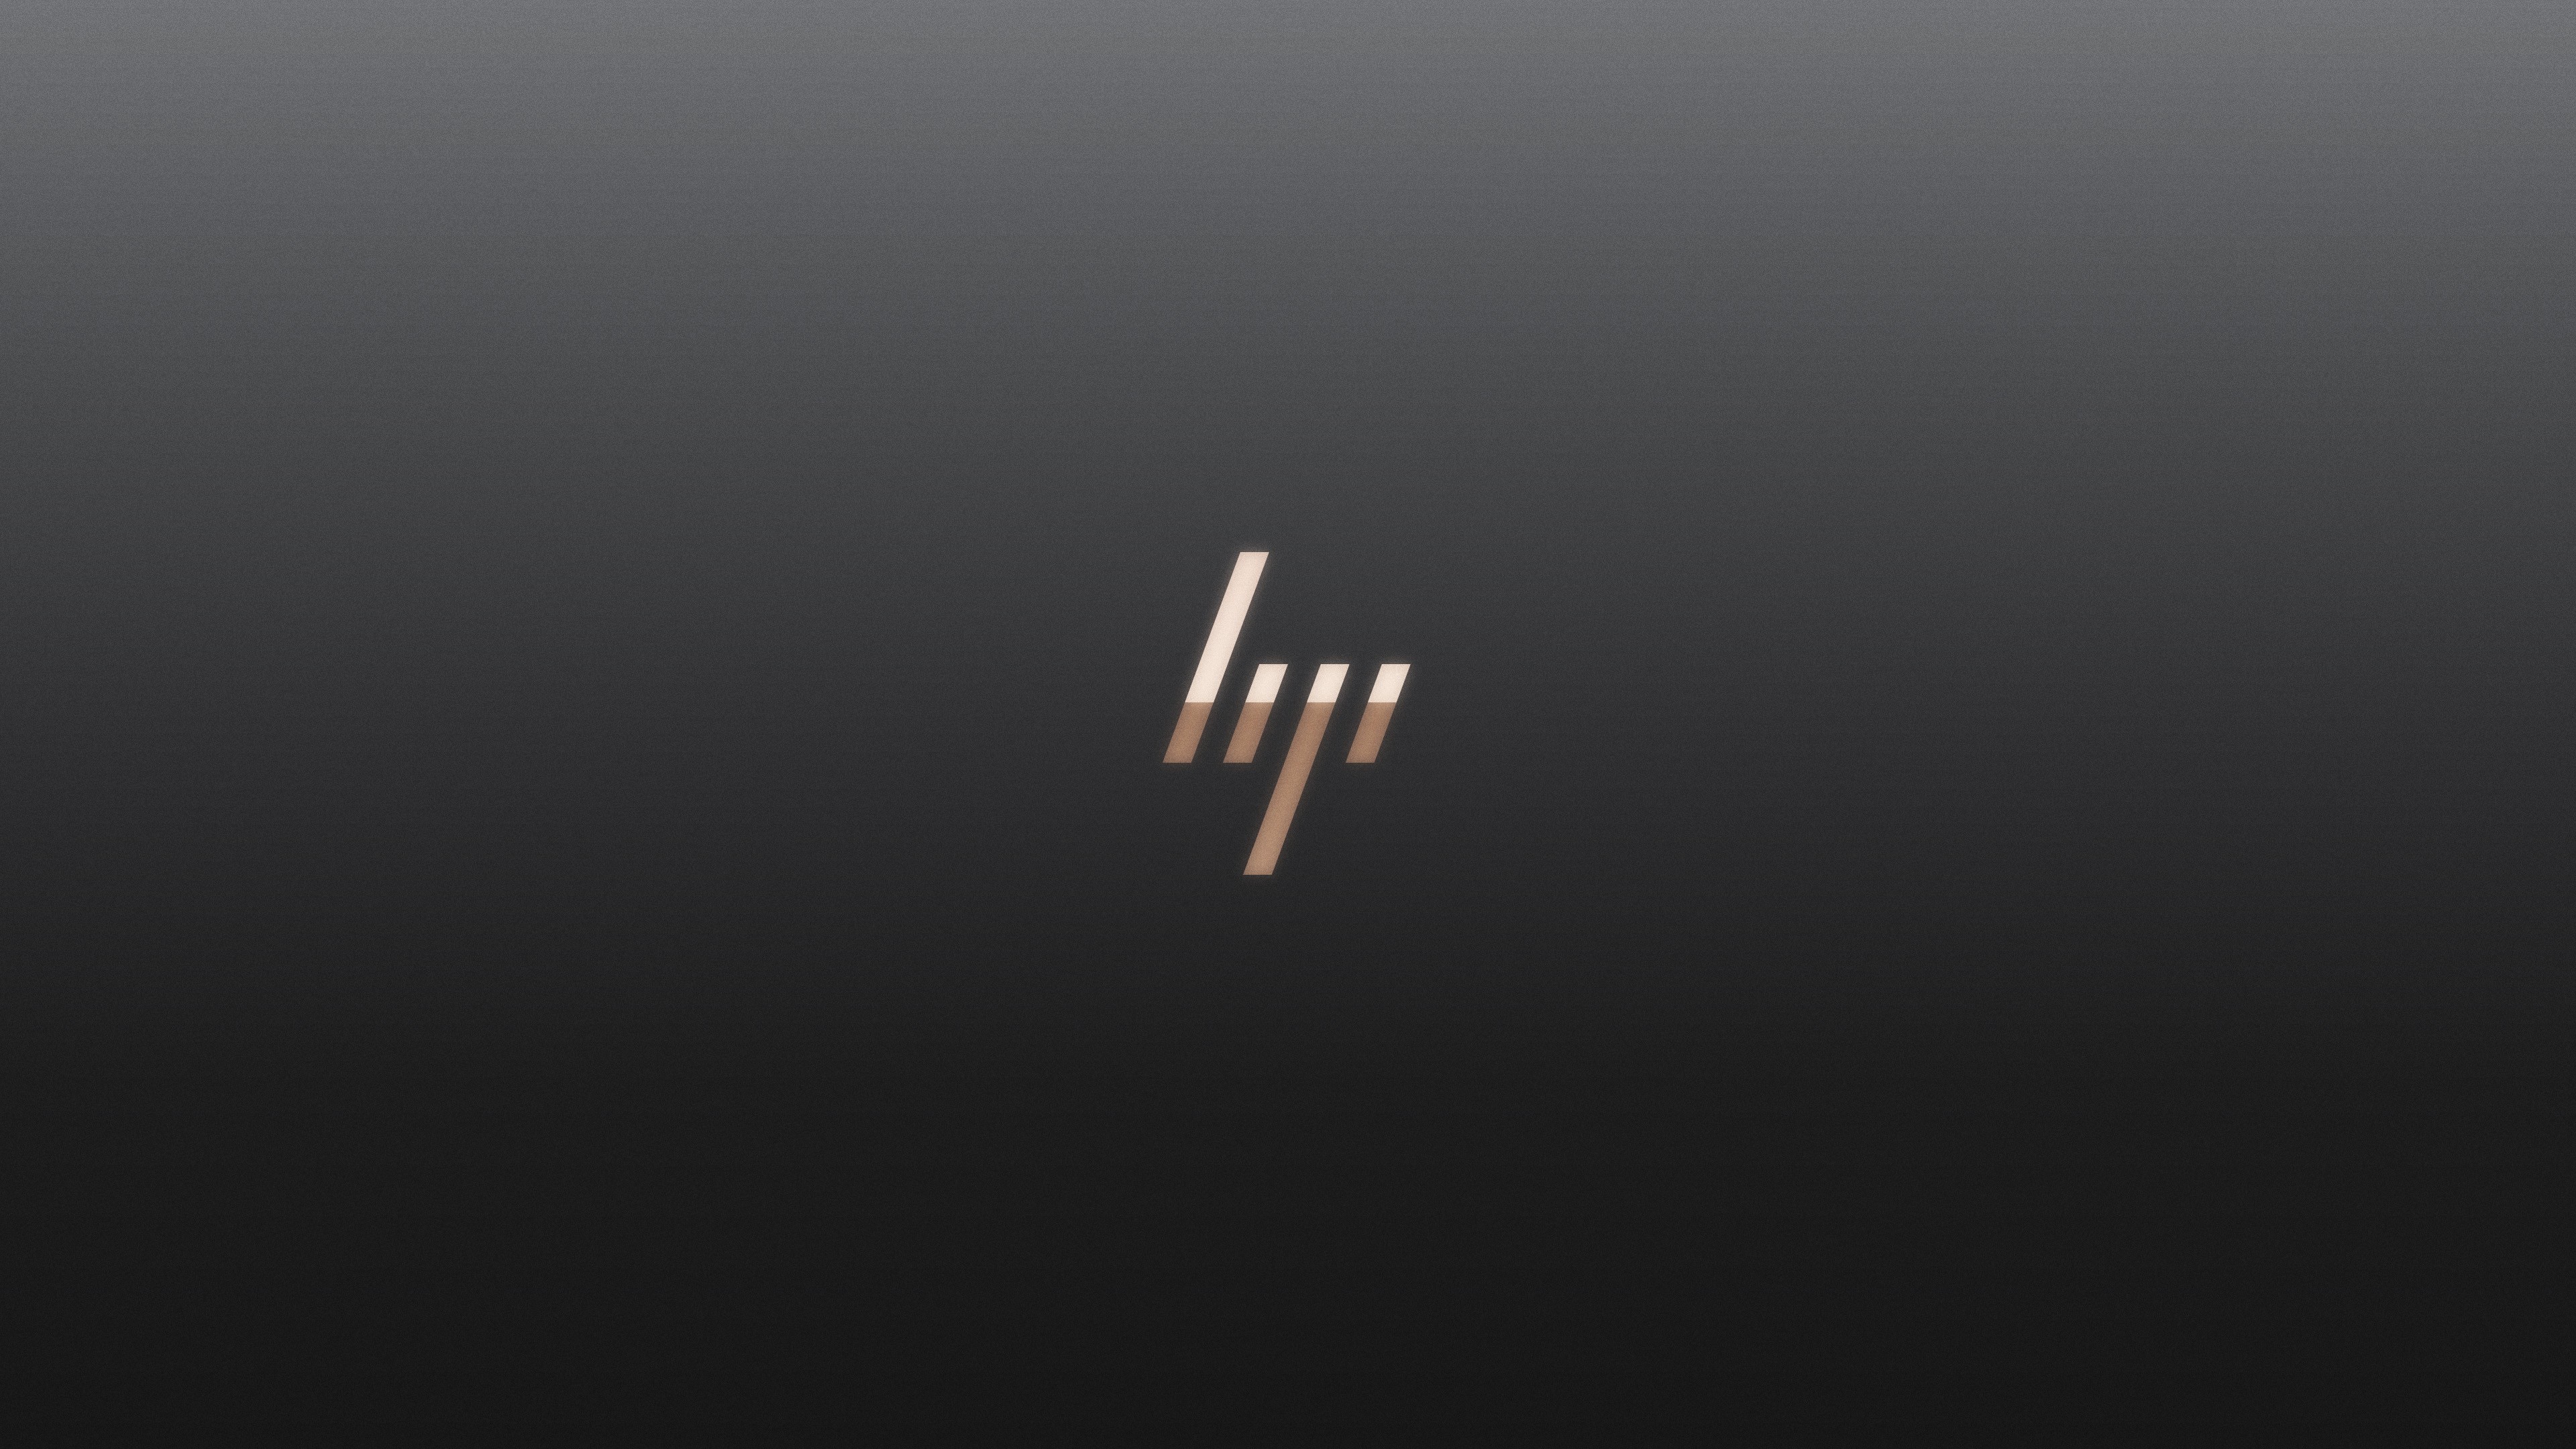 Logo Hewlett Packard Minimalism Simple Background 3840x2160